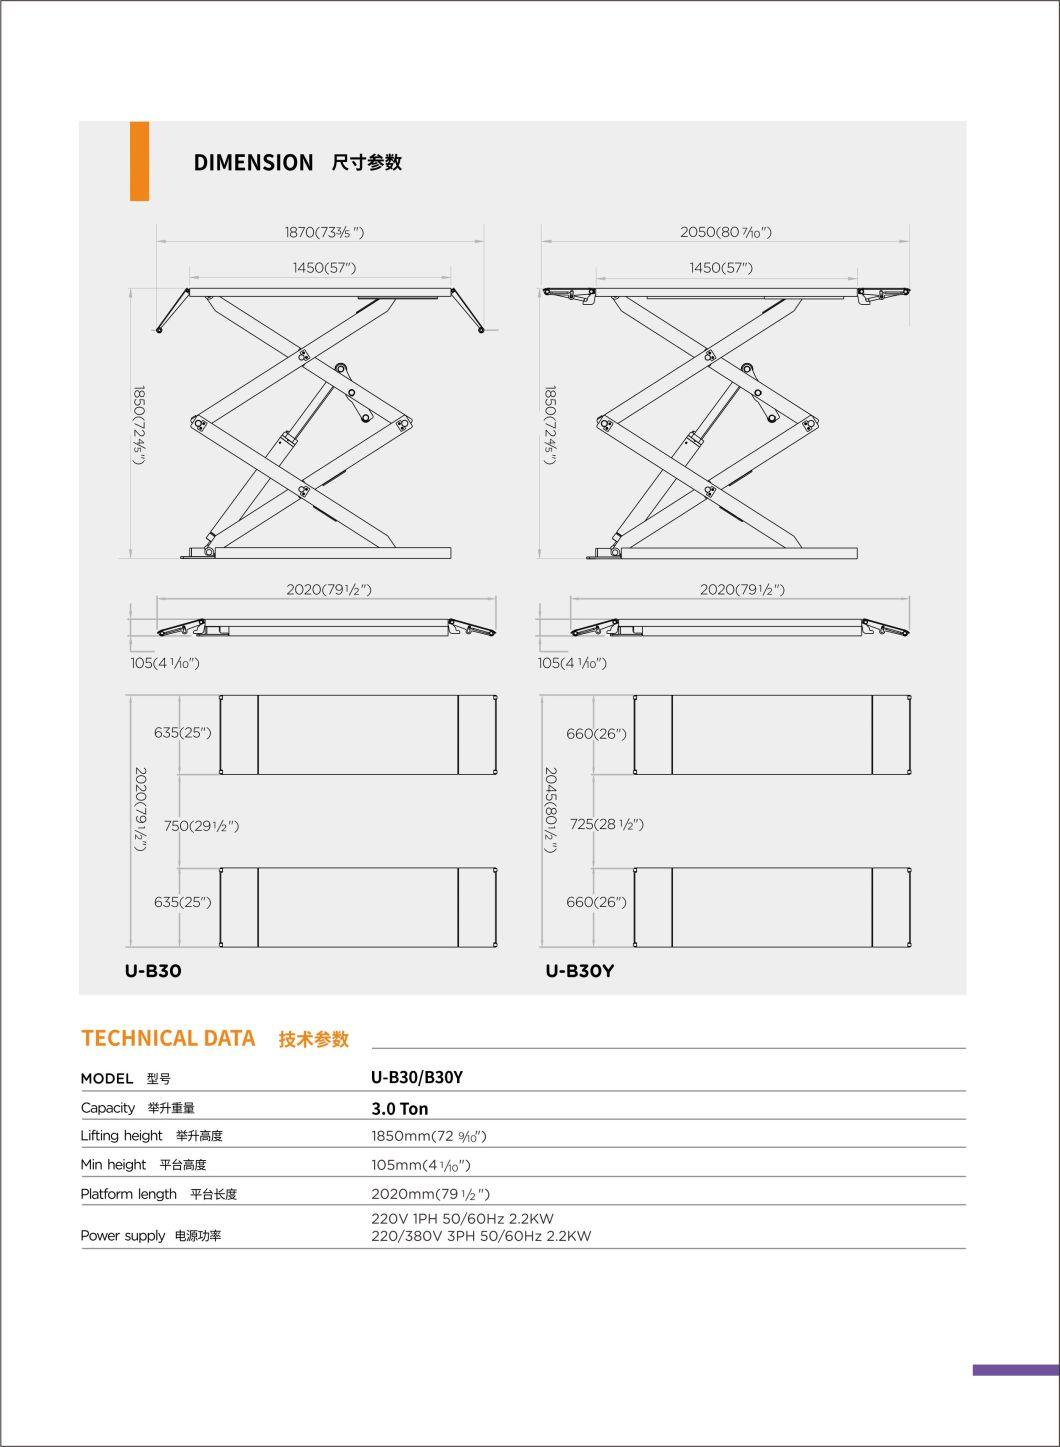 Unite Scissor Lift Table 3.0 T Capacity U-B30y Ultra-Thin Wheel Free Scissor Lift Table